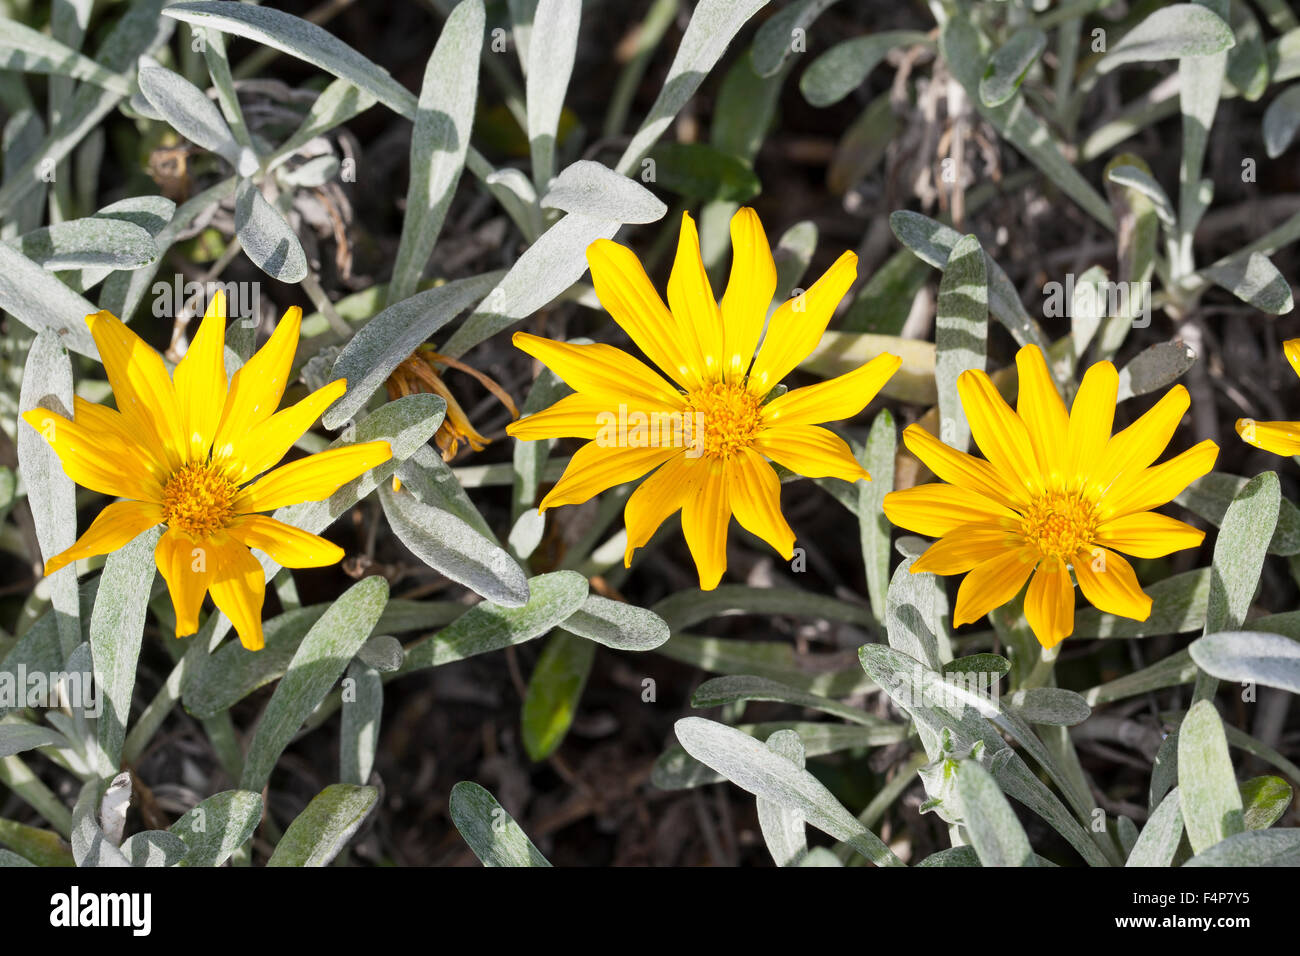 Treasureflower, Treasure-flower, Treasure flower, Gazanie, Mittagsgold, Mittagsgoldblume, Gazania krebsiana, Gazania nivea Stock Photo